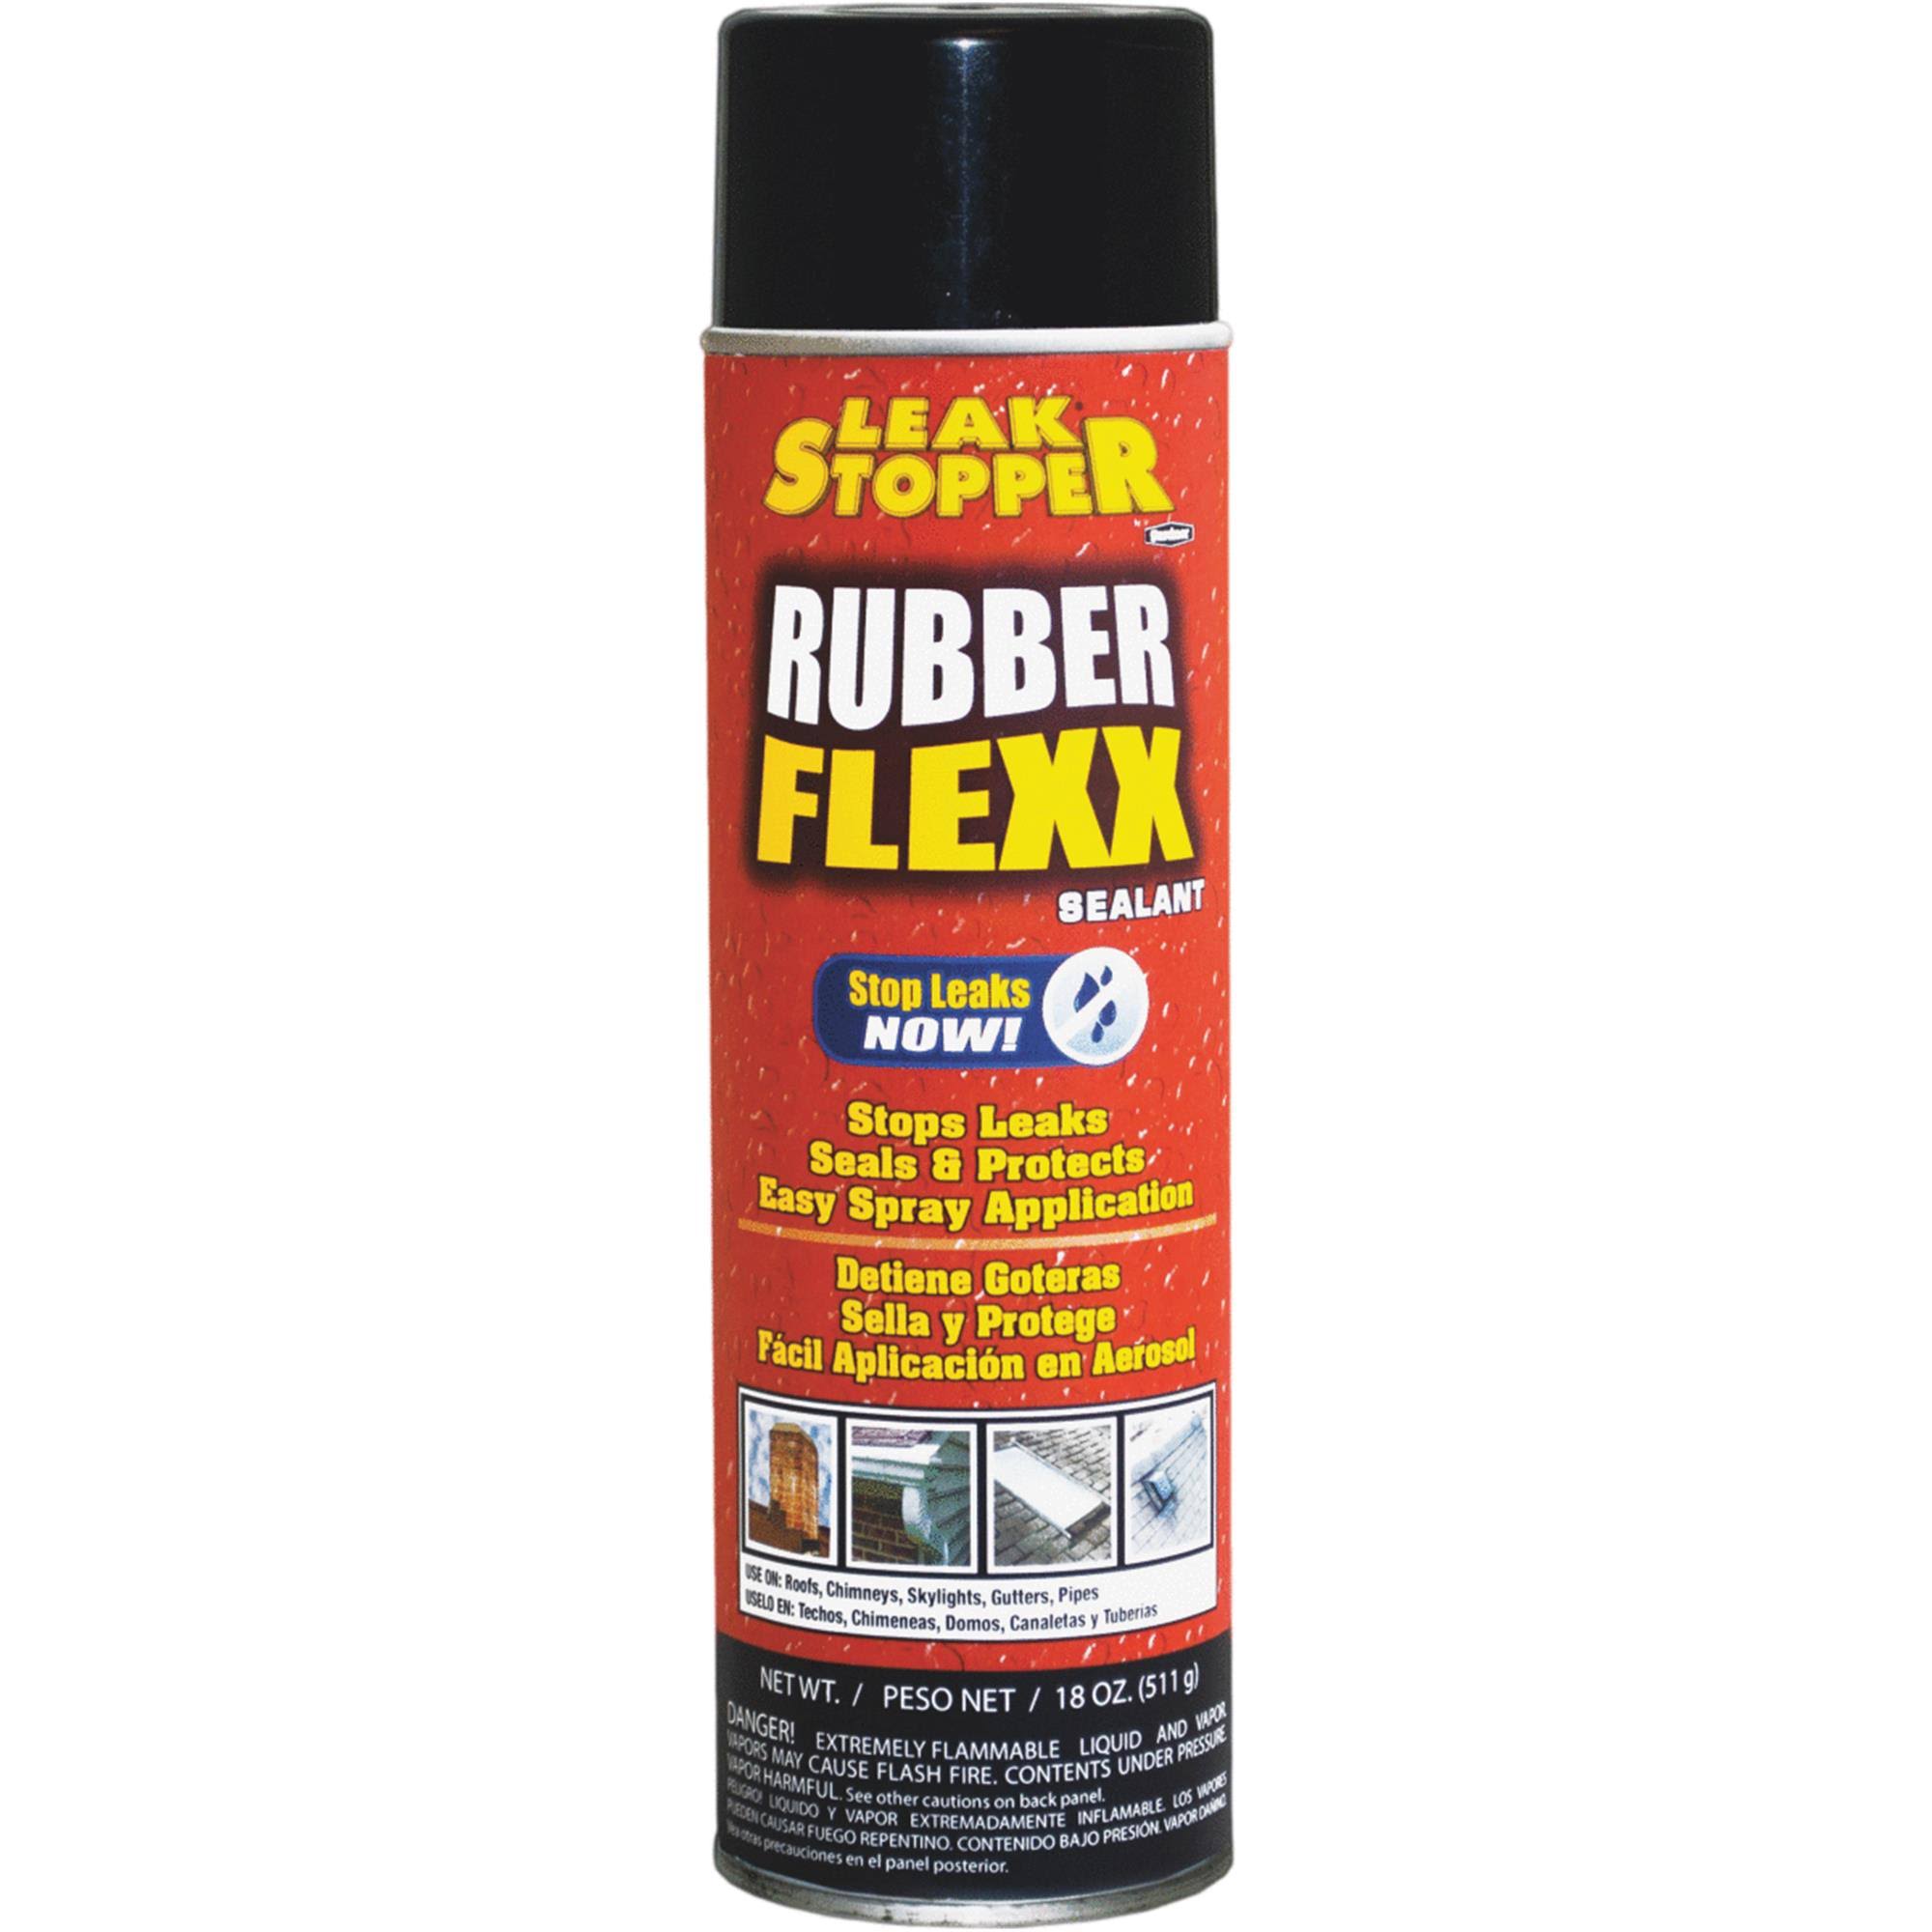 Gardner Gibson Leak Stopper Rubber Flexx Sealant - 18oz